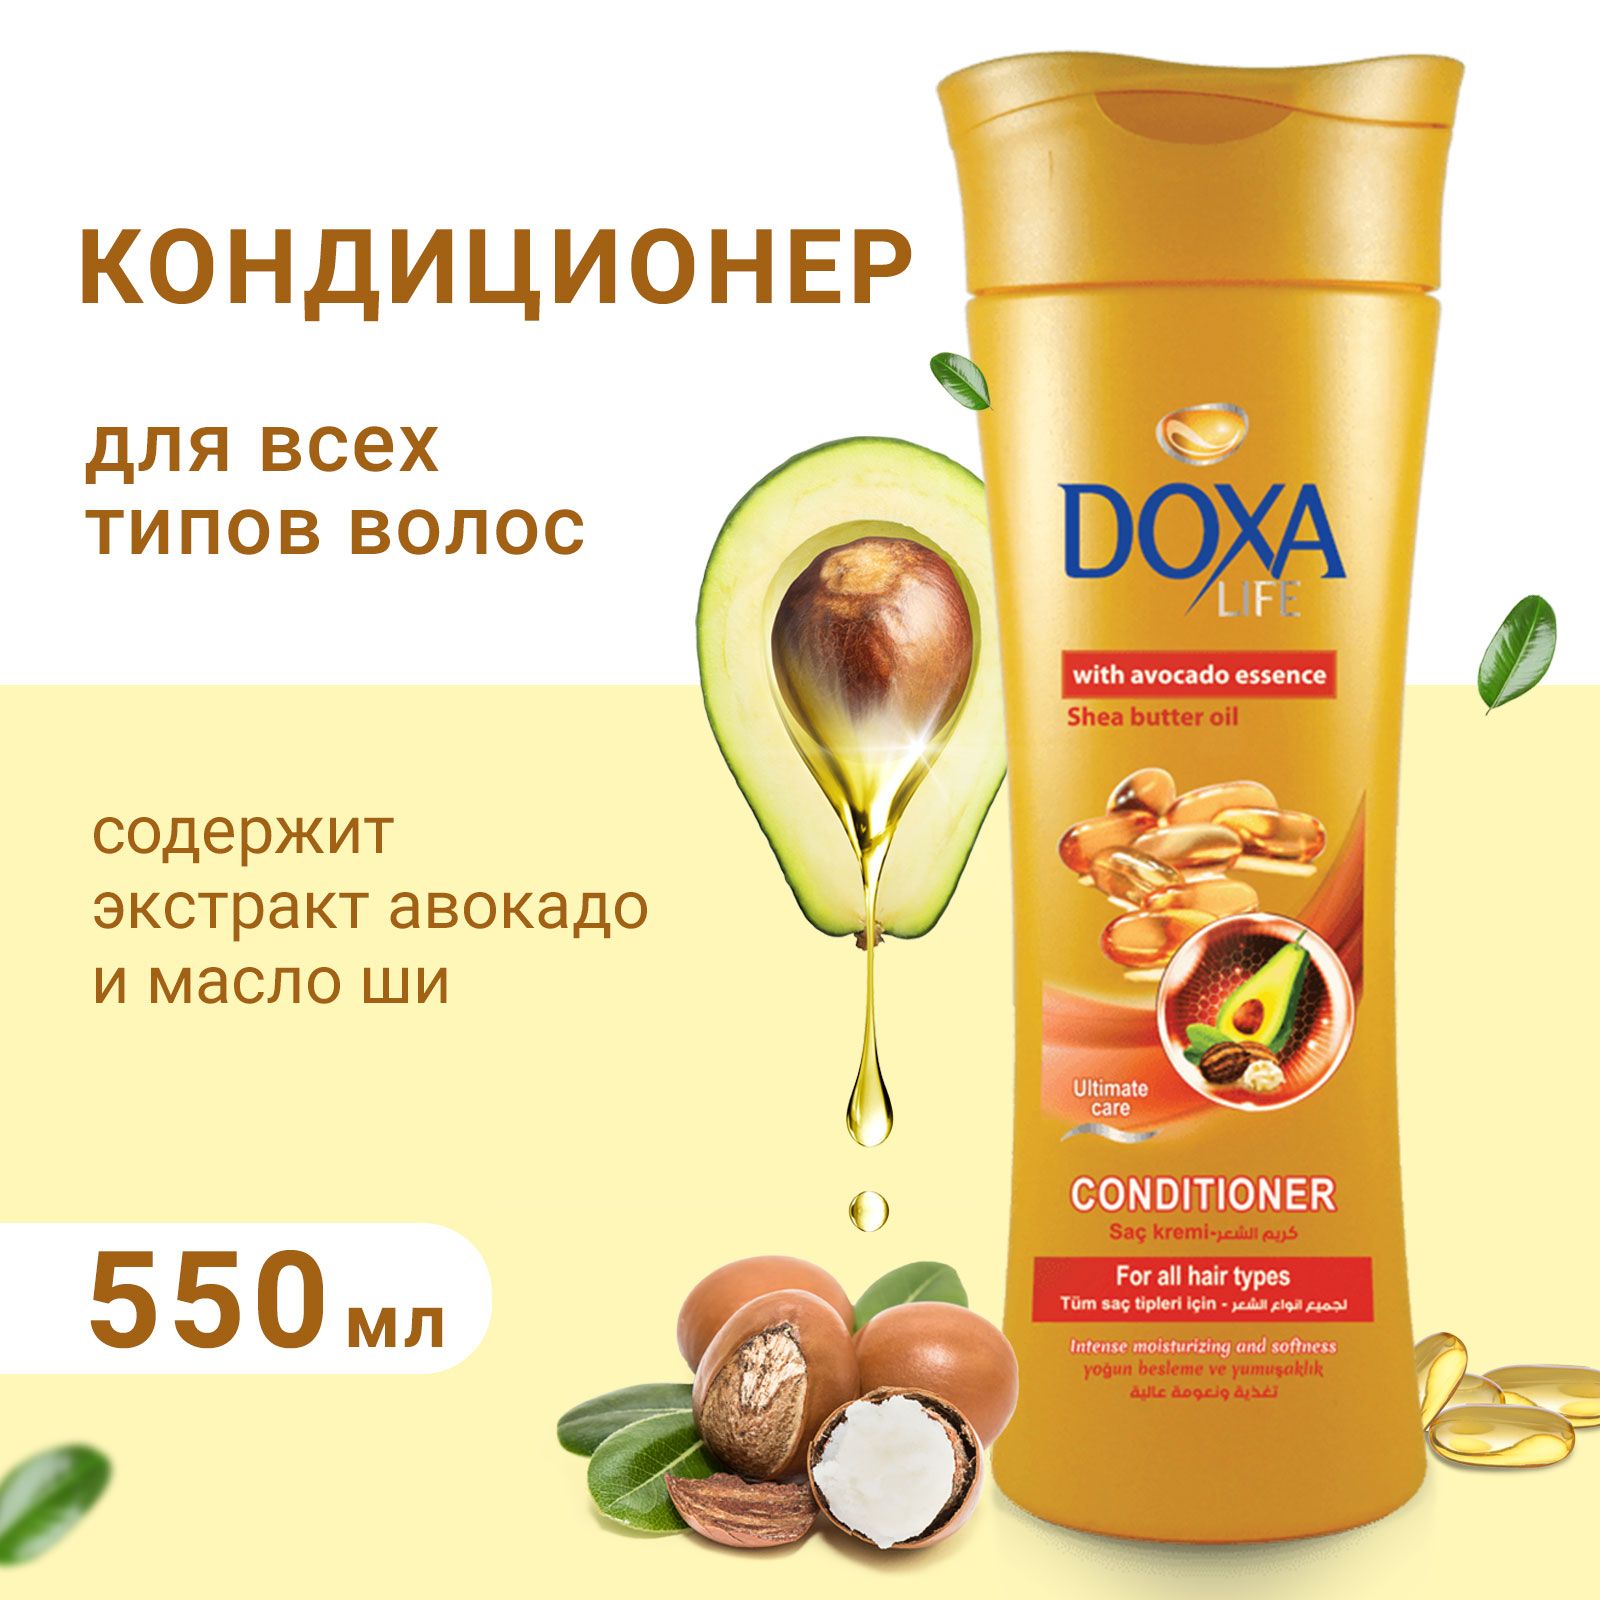 Кондиционер DOXA экстракт авокадо и масло ши для всех типов волос 550 мл - фото 2